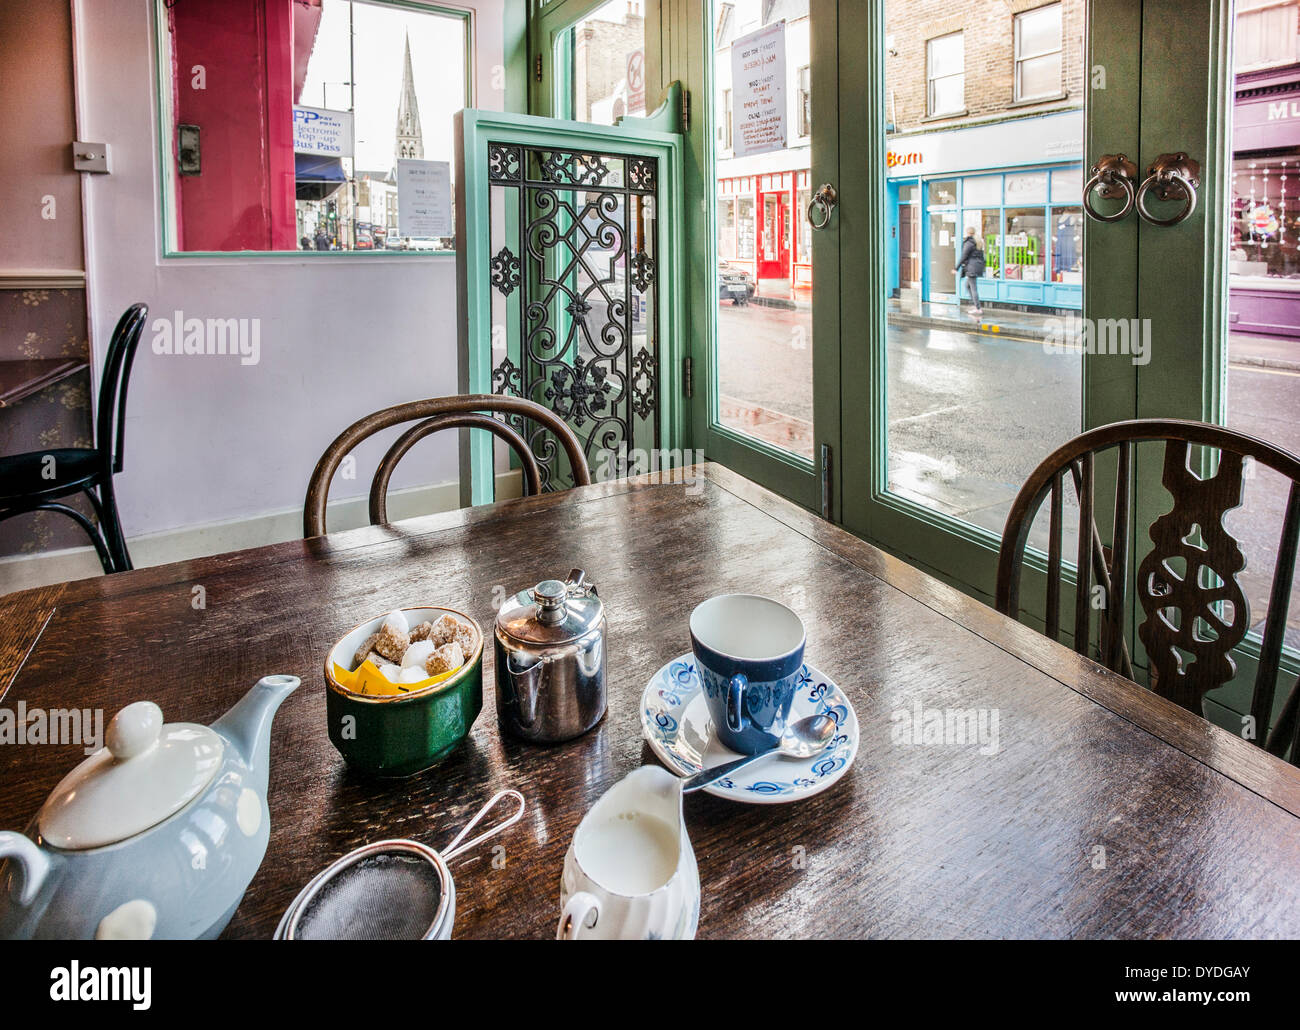 The tea rooms on Stoke Newington Church Street. Stock Photo